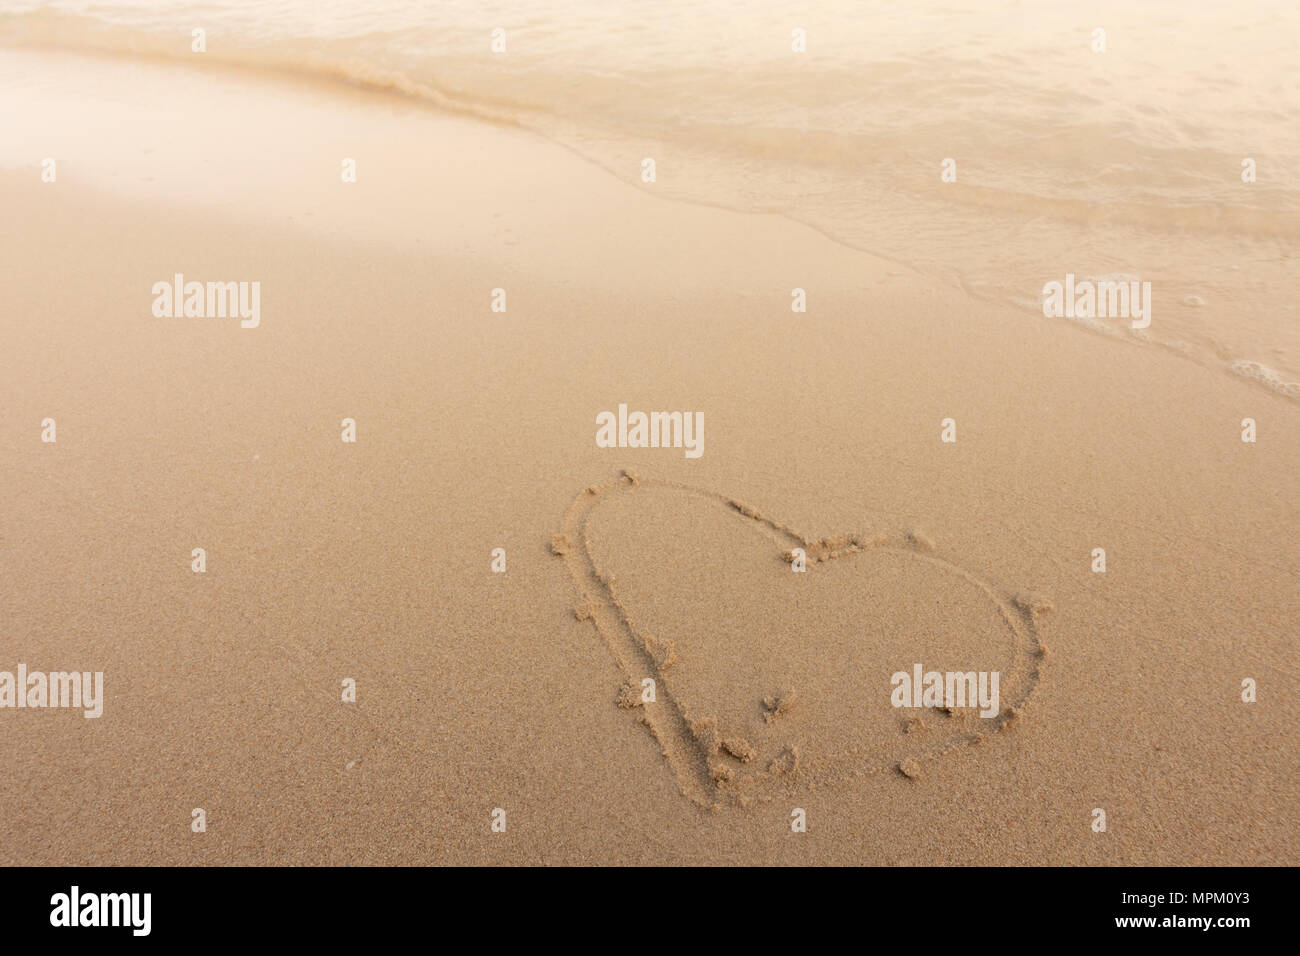 Beau fond plage avec coeur en été. Image libre de haute qualité image de la forme coeur dessiner sur le sable et la plage Banque D'Images